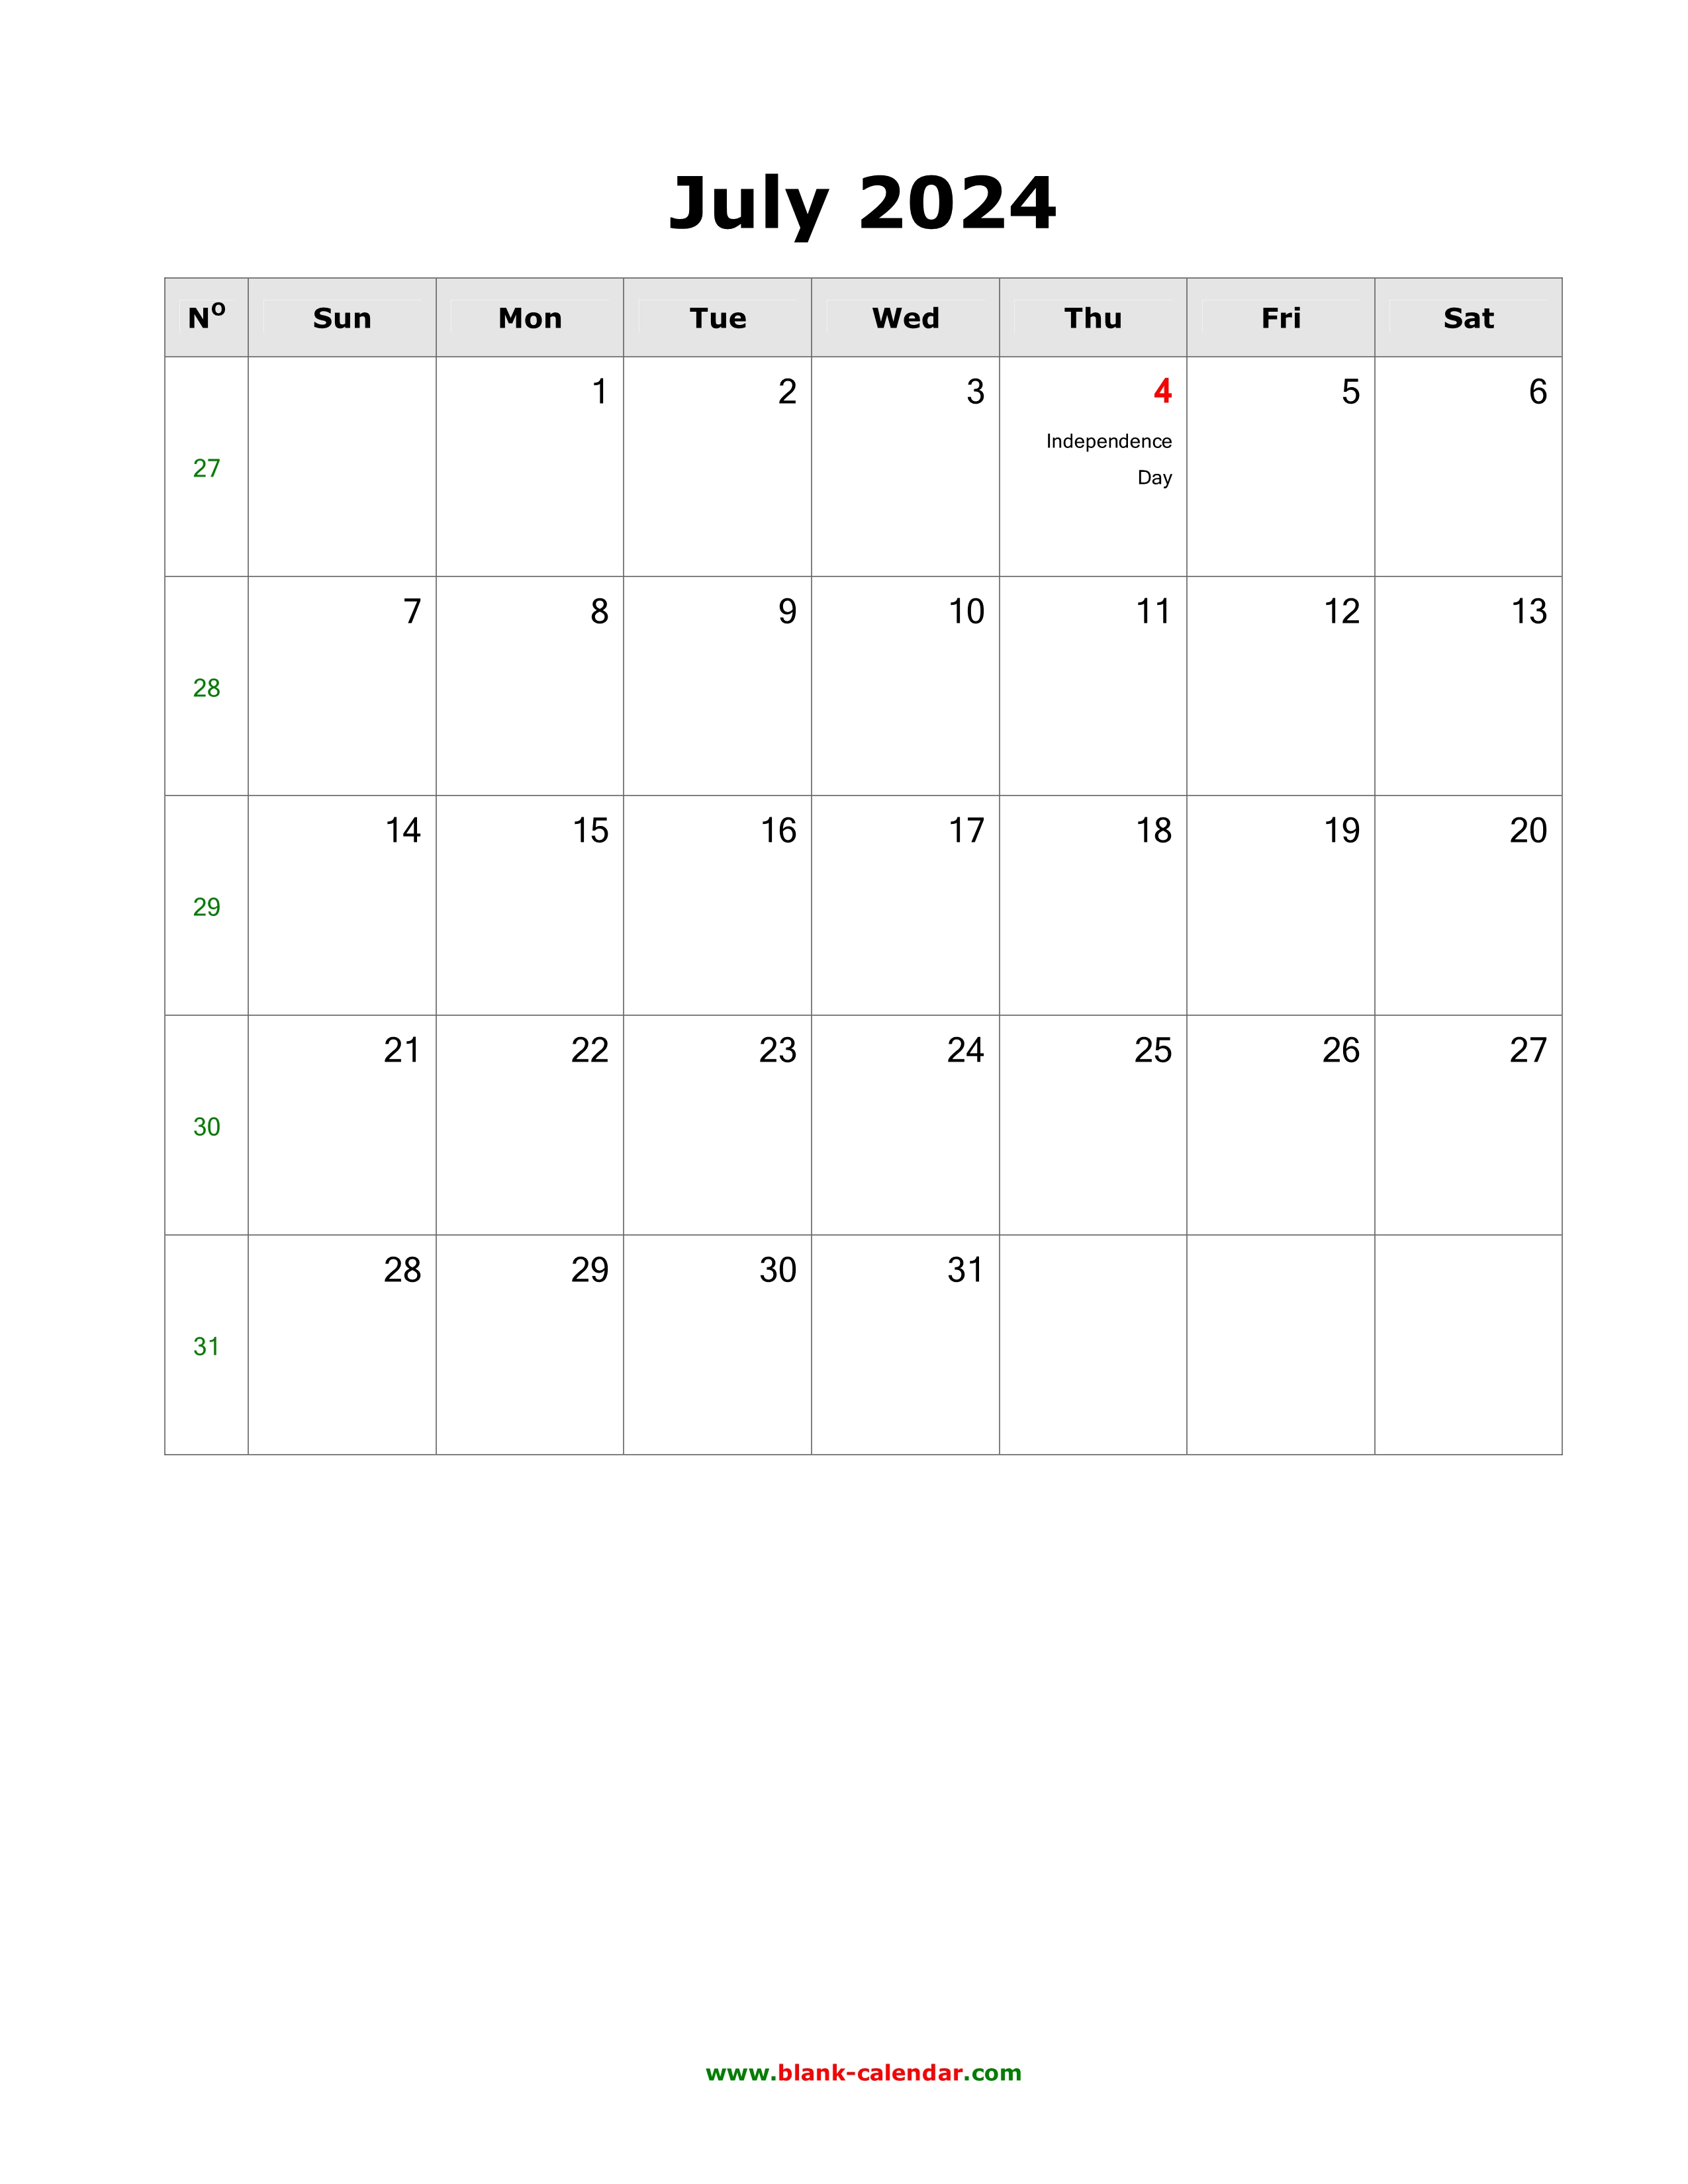 Calendar June July August 2024 Excel Ilyssa Willette